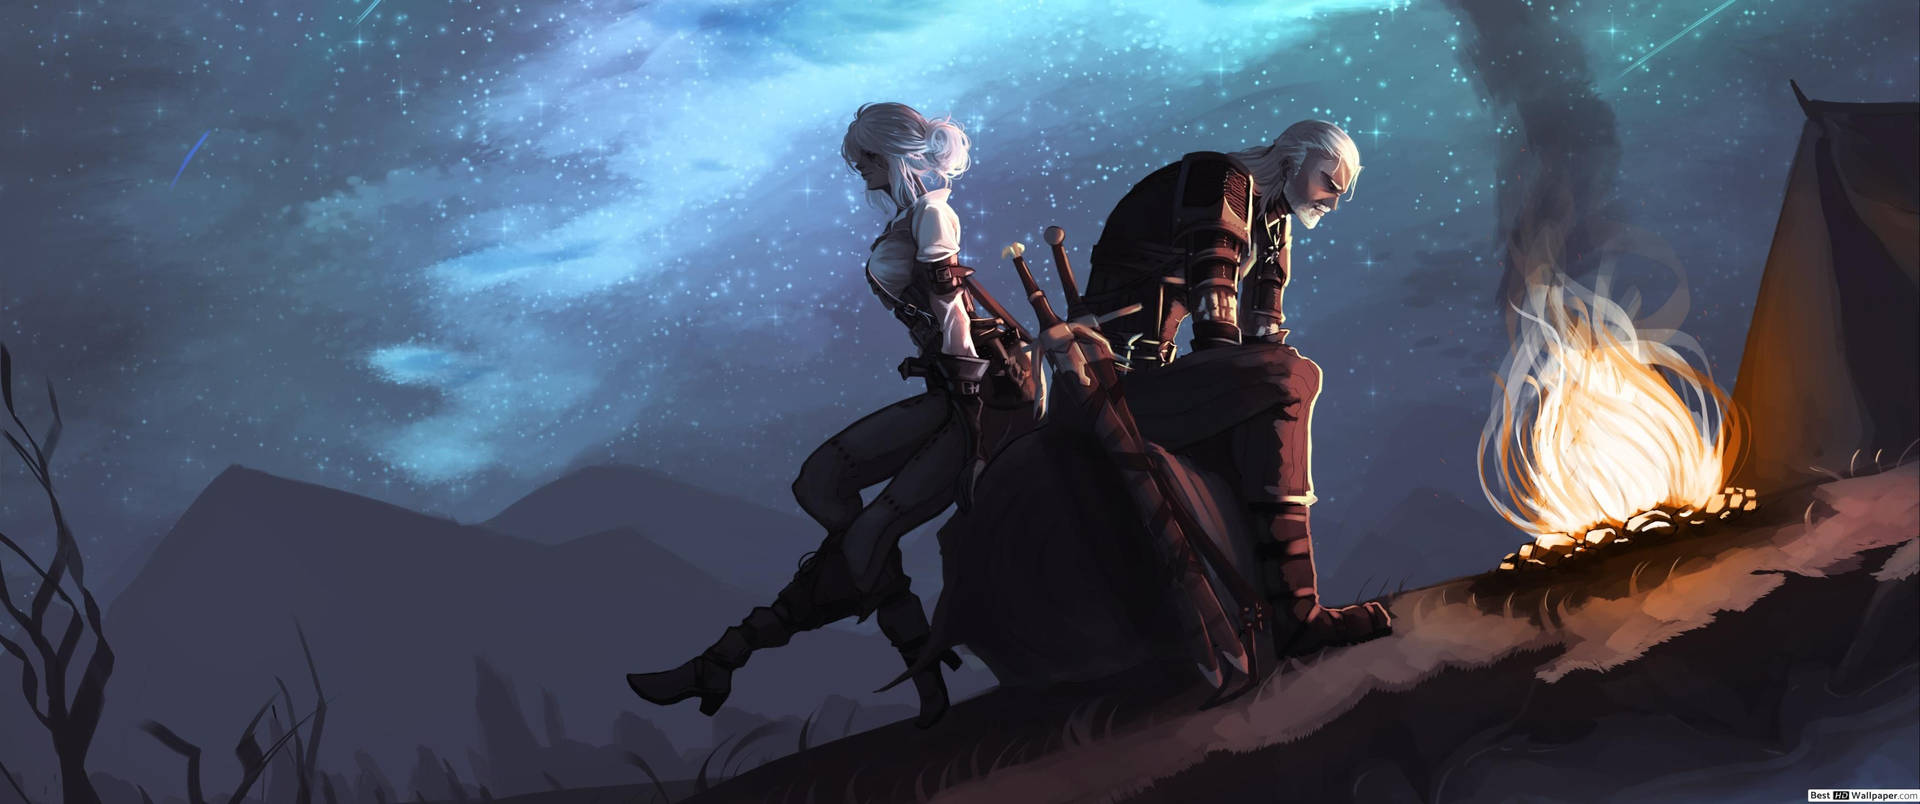 The Witcher Geralt And Ciri Fan Art